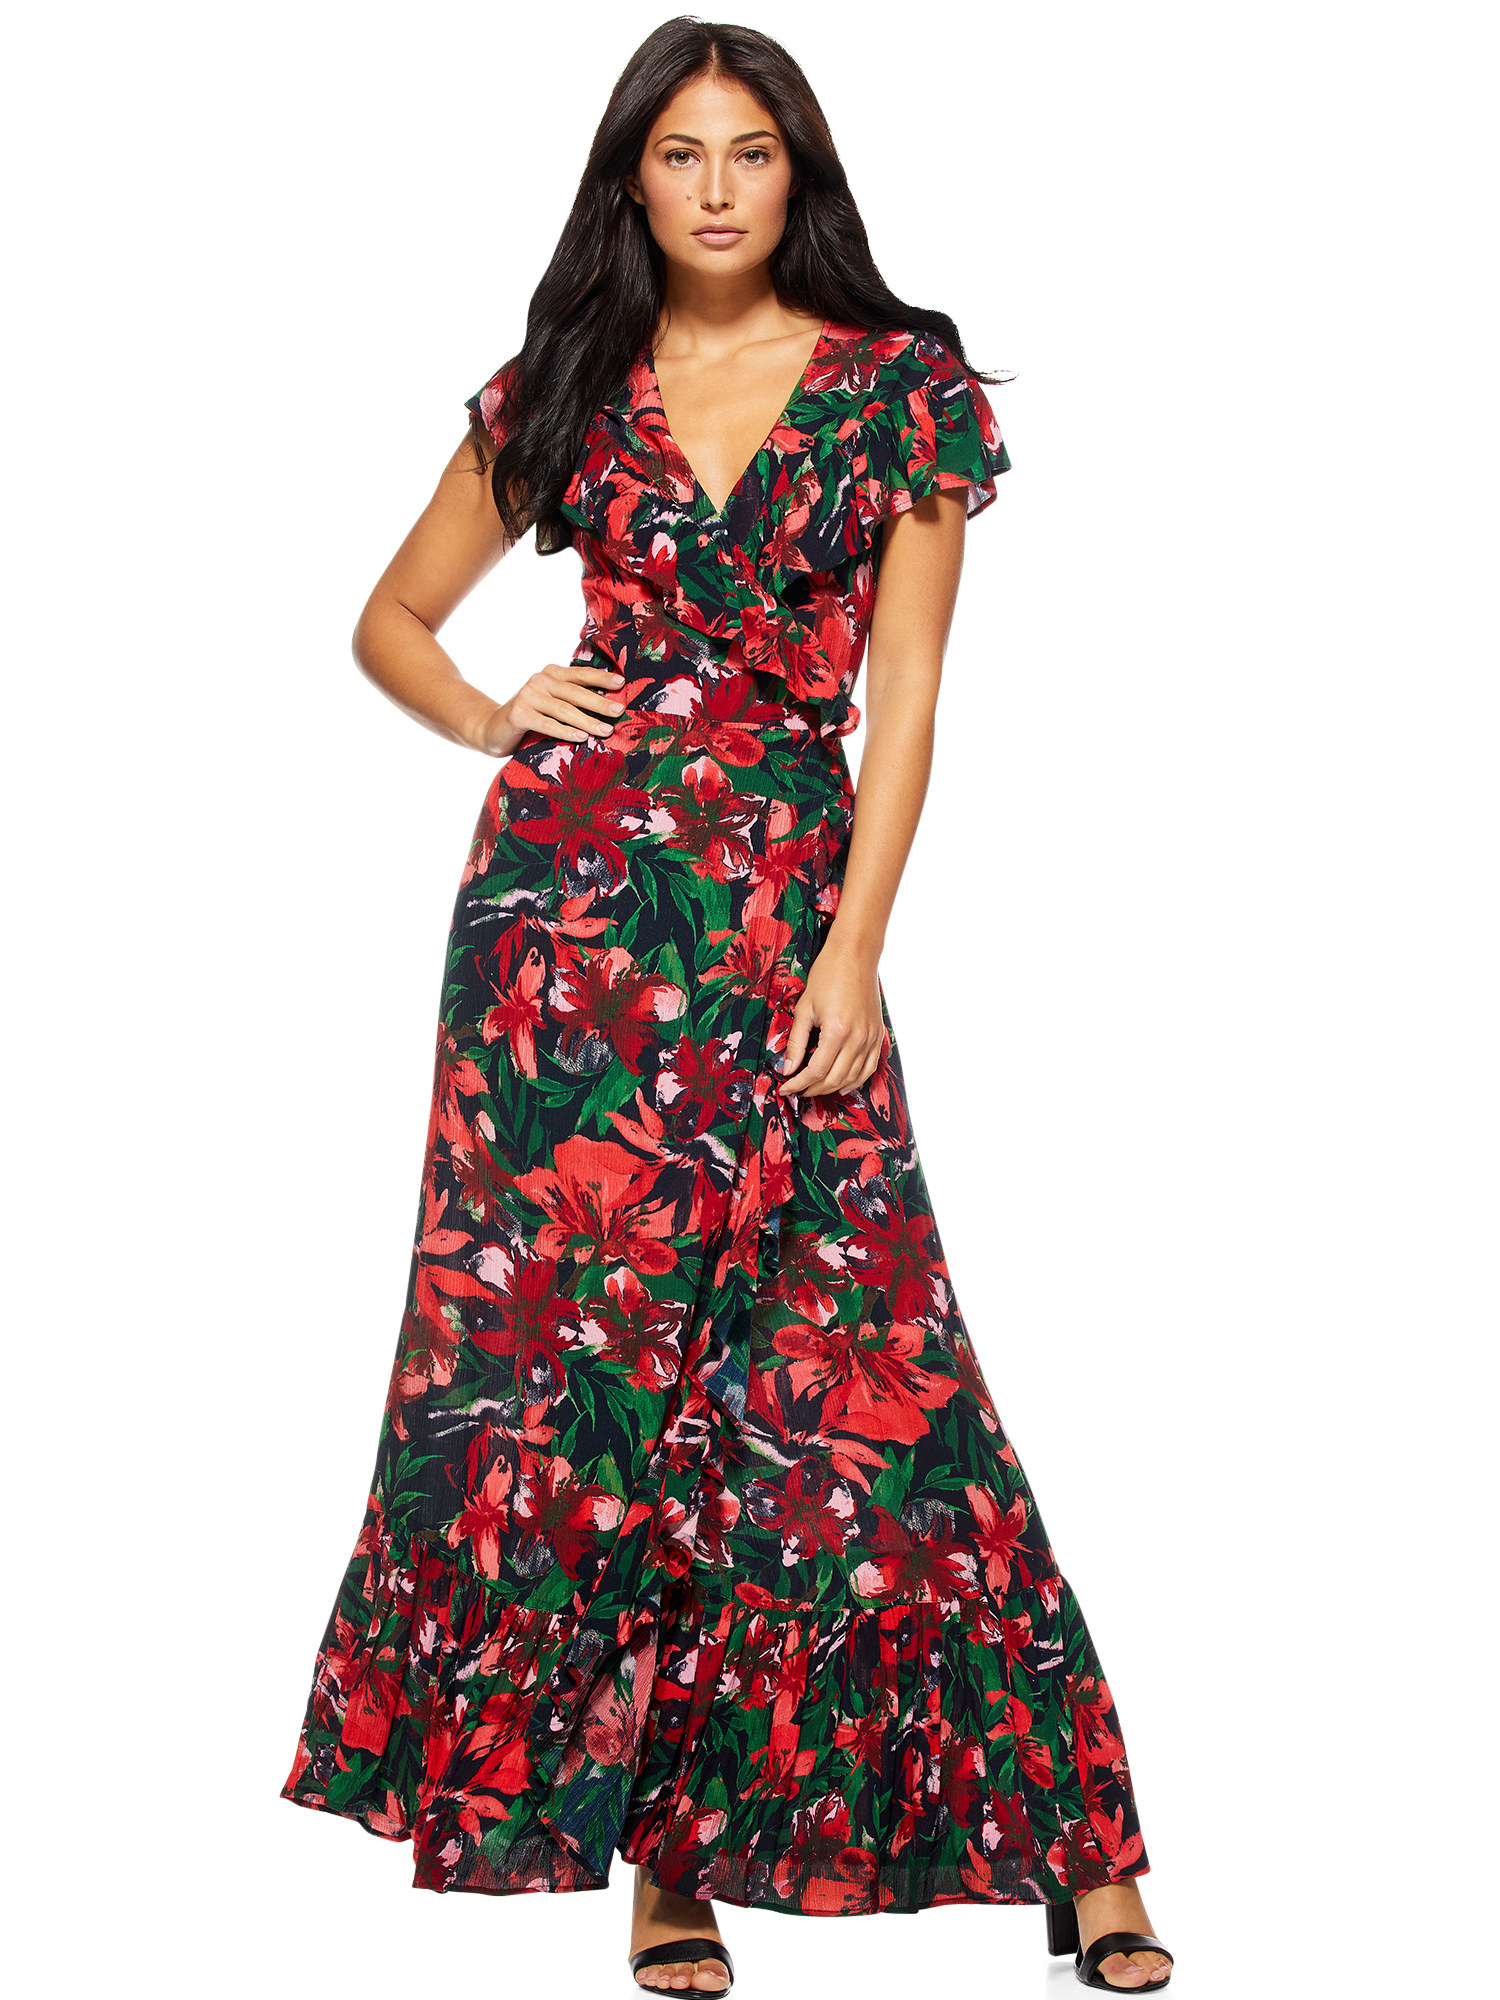 Model wearing flower print floor-length dress 